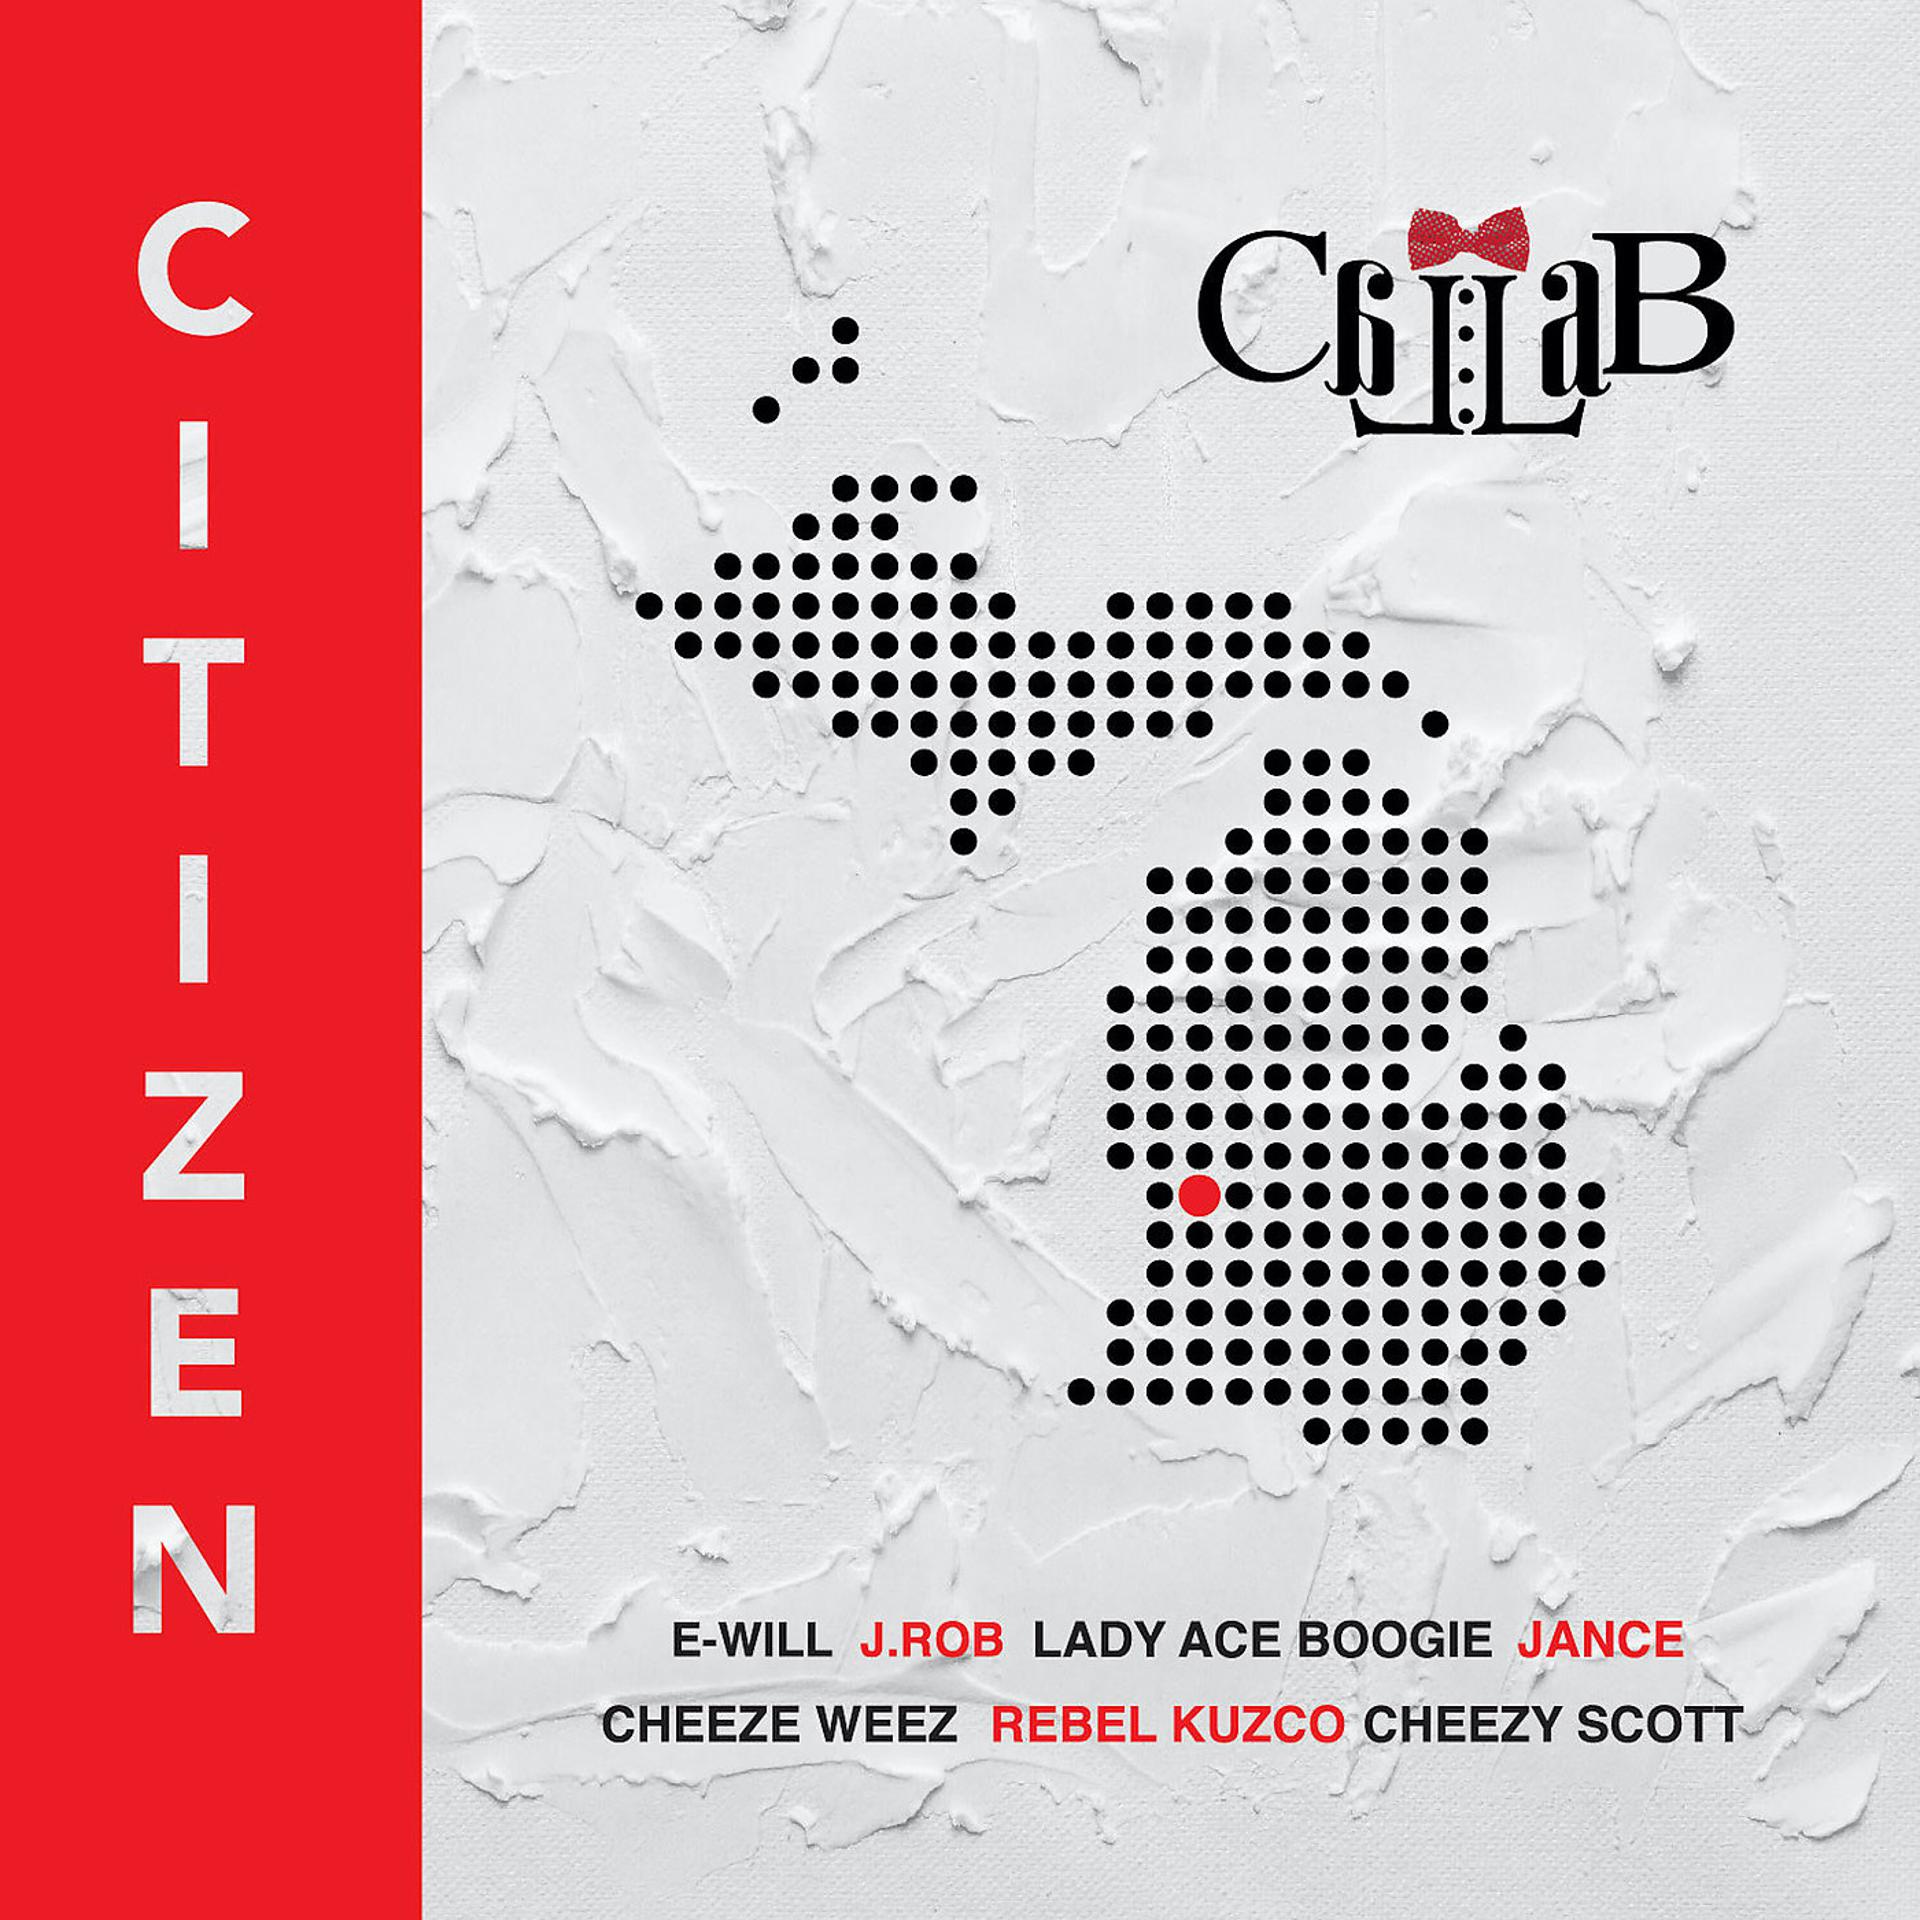 Постер альбома Citizen